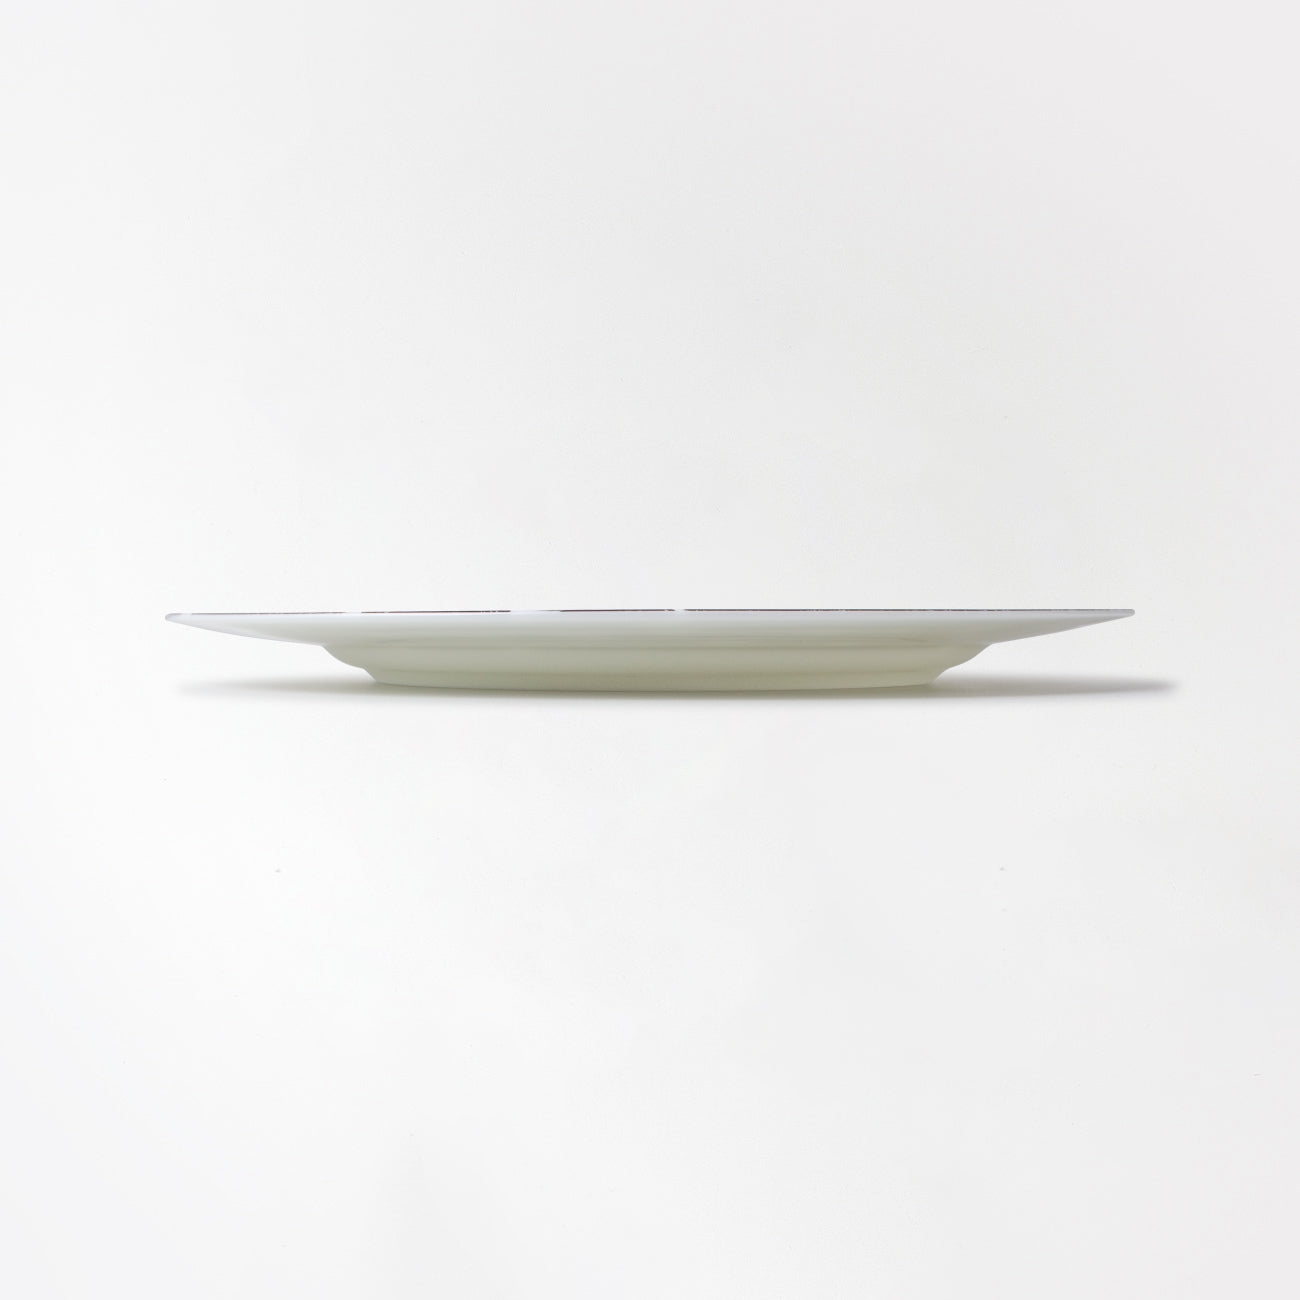 【復興支援商品】ART PLATE 25cm Sanae Sasaki 「(無題)(丸)」